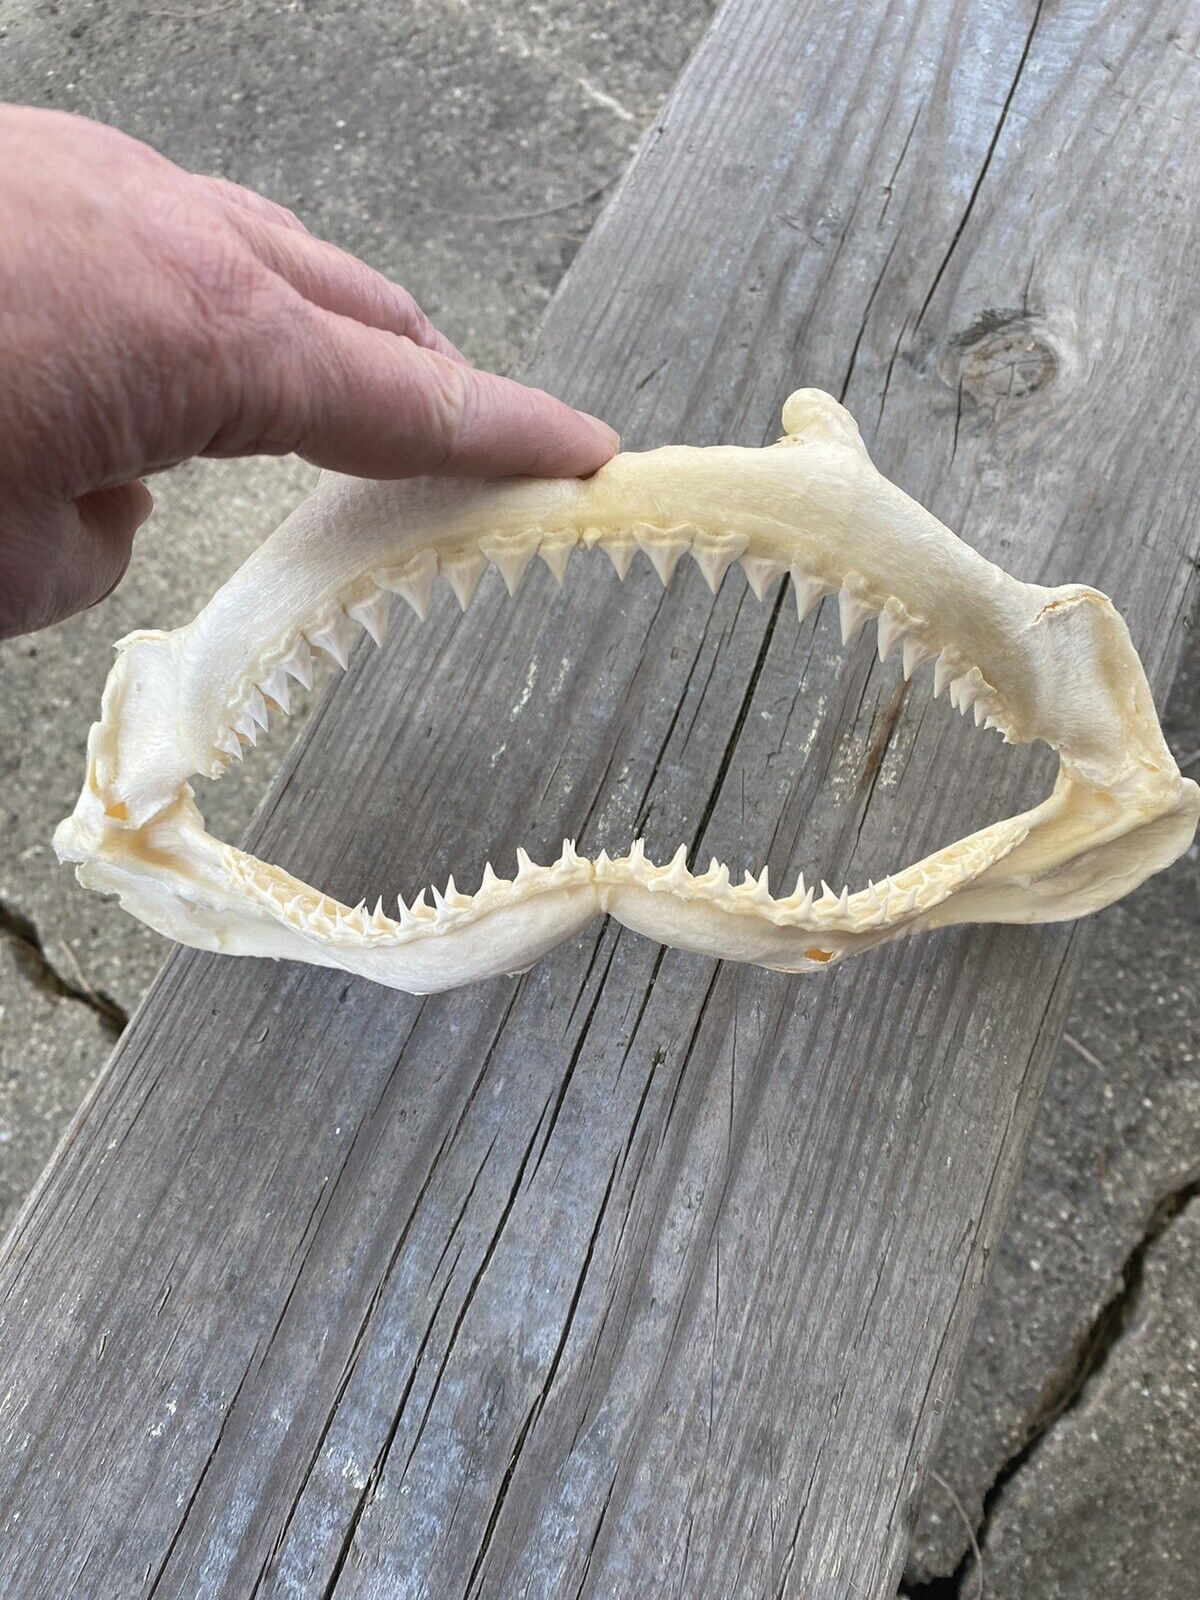 SHARKS JAW -- REAL SHARKS TEETH -- UNKNOWN SHARK -- Lots of Teeth